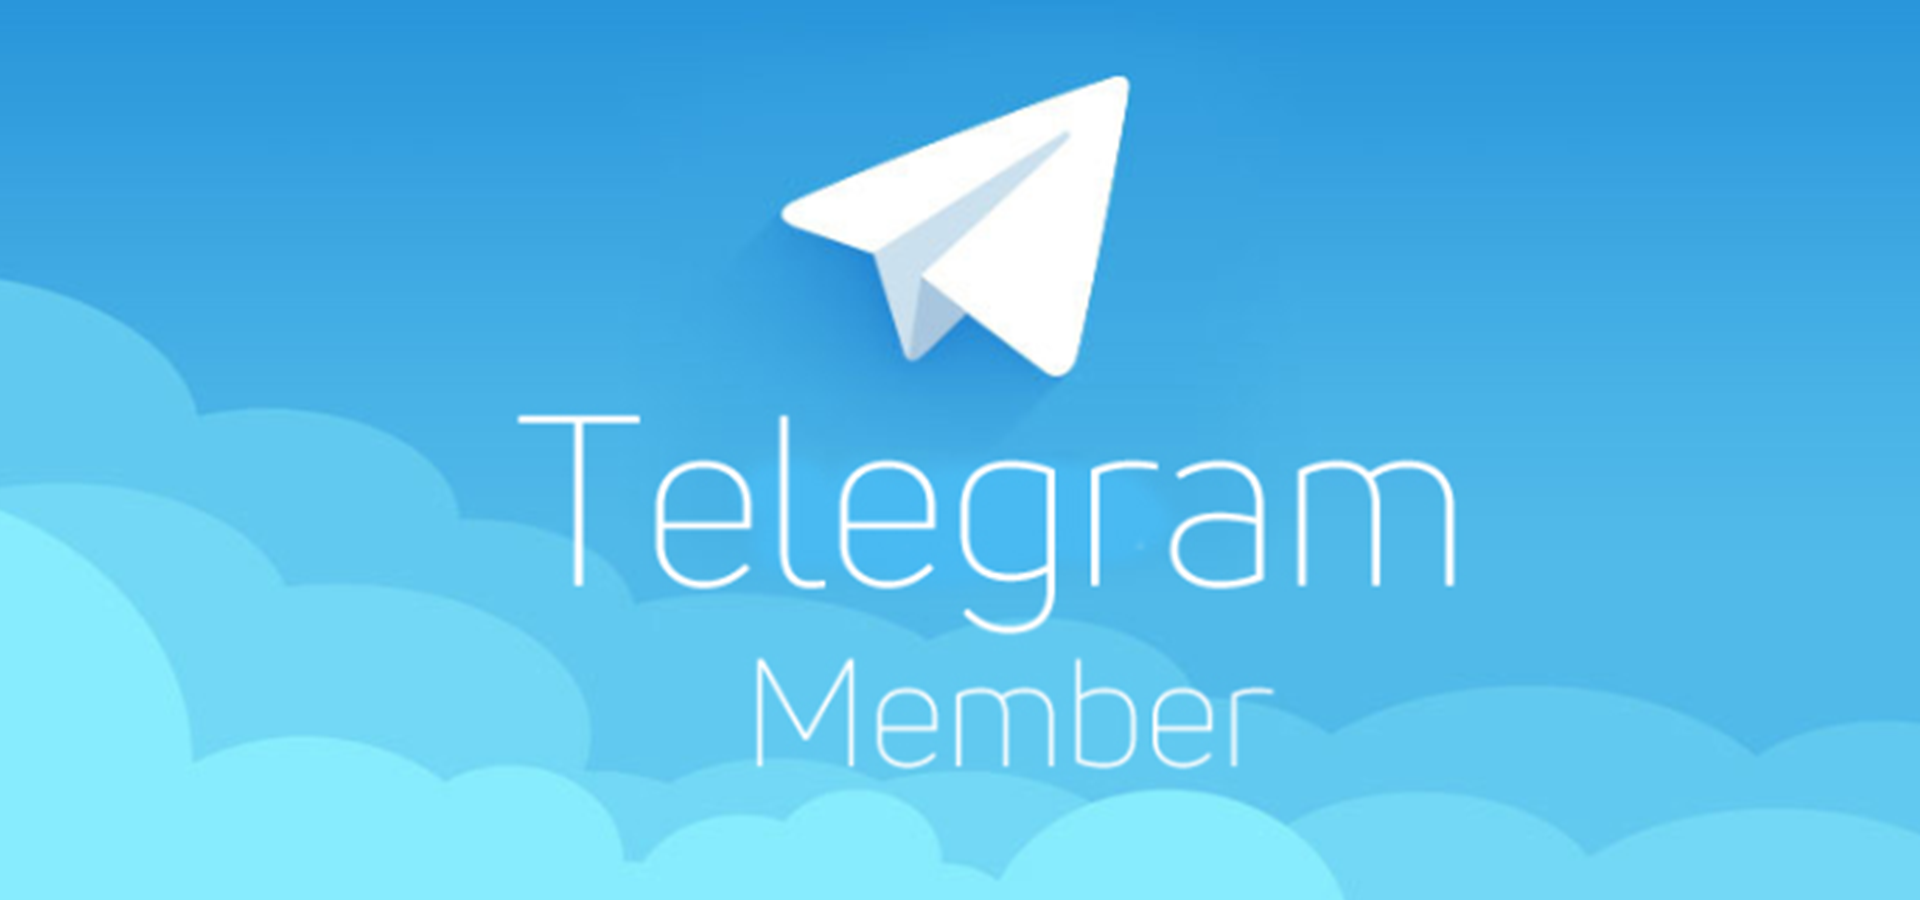 Nfkrz telegram